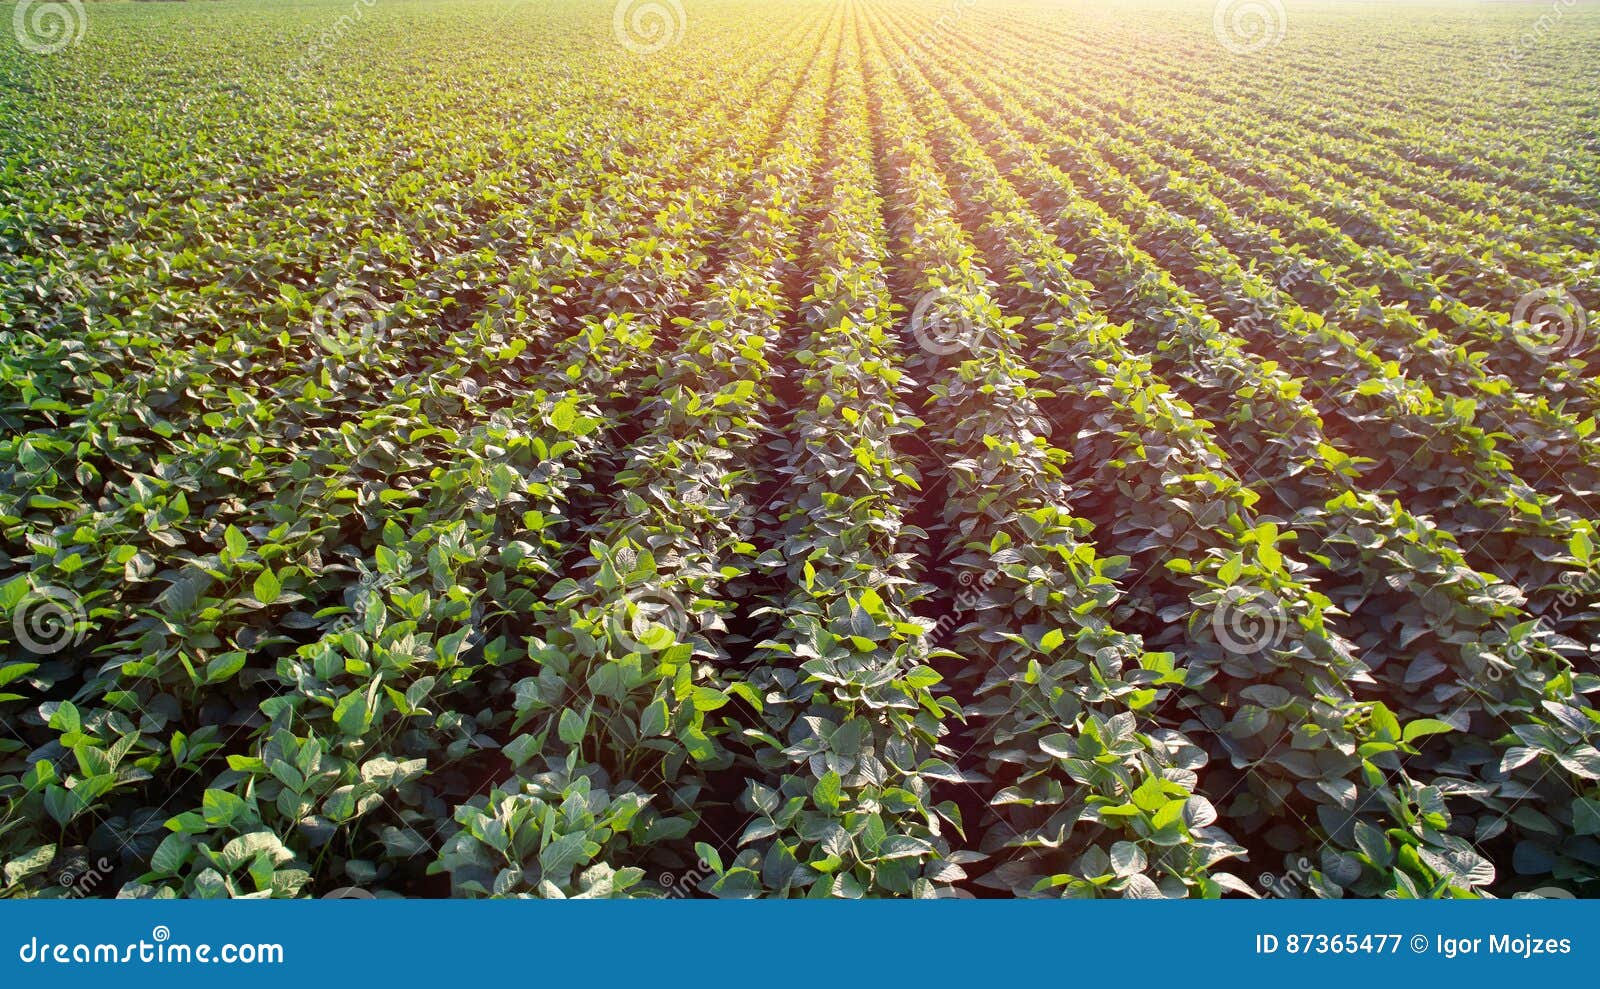 sunny soya plantation